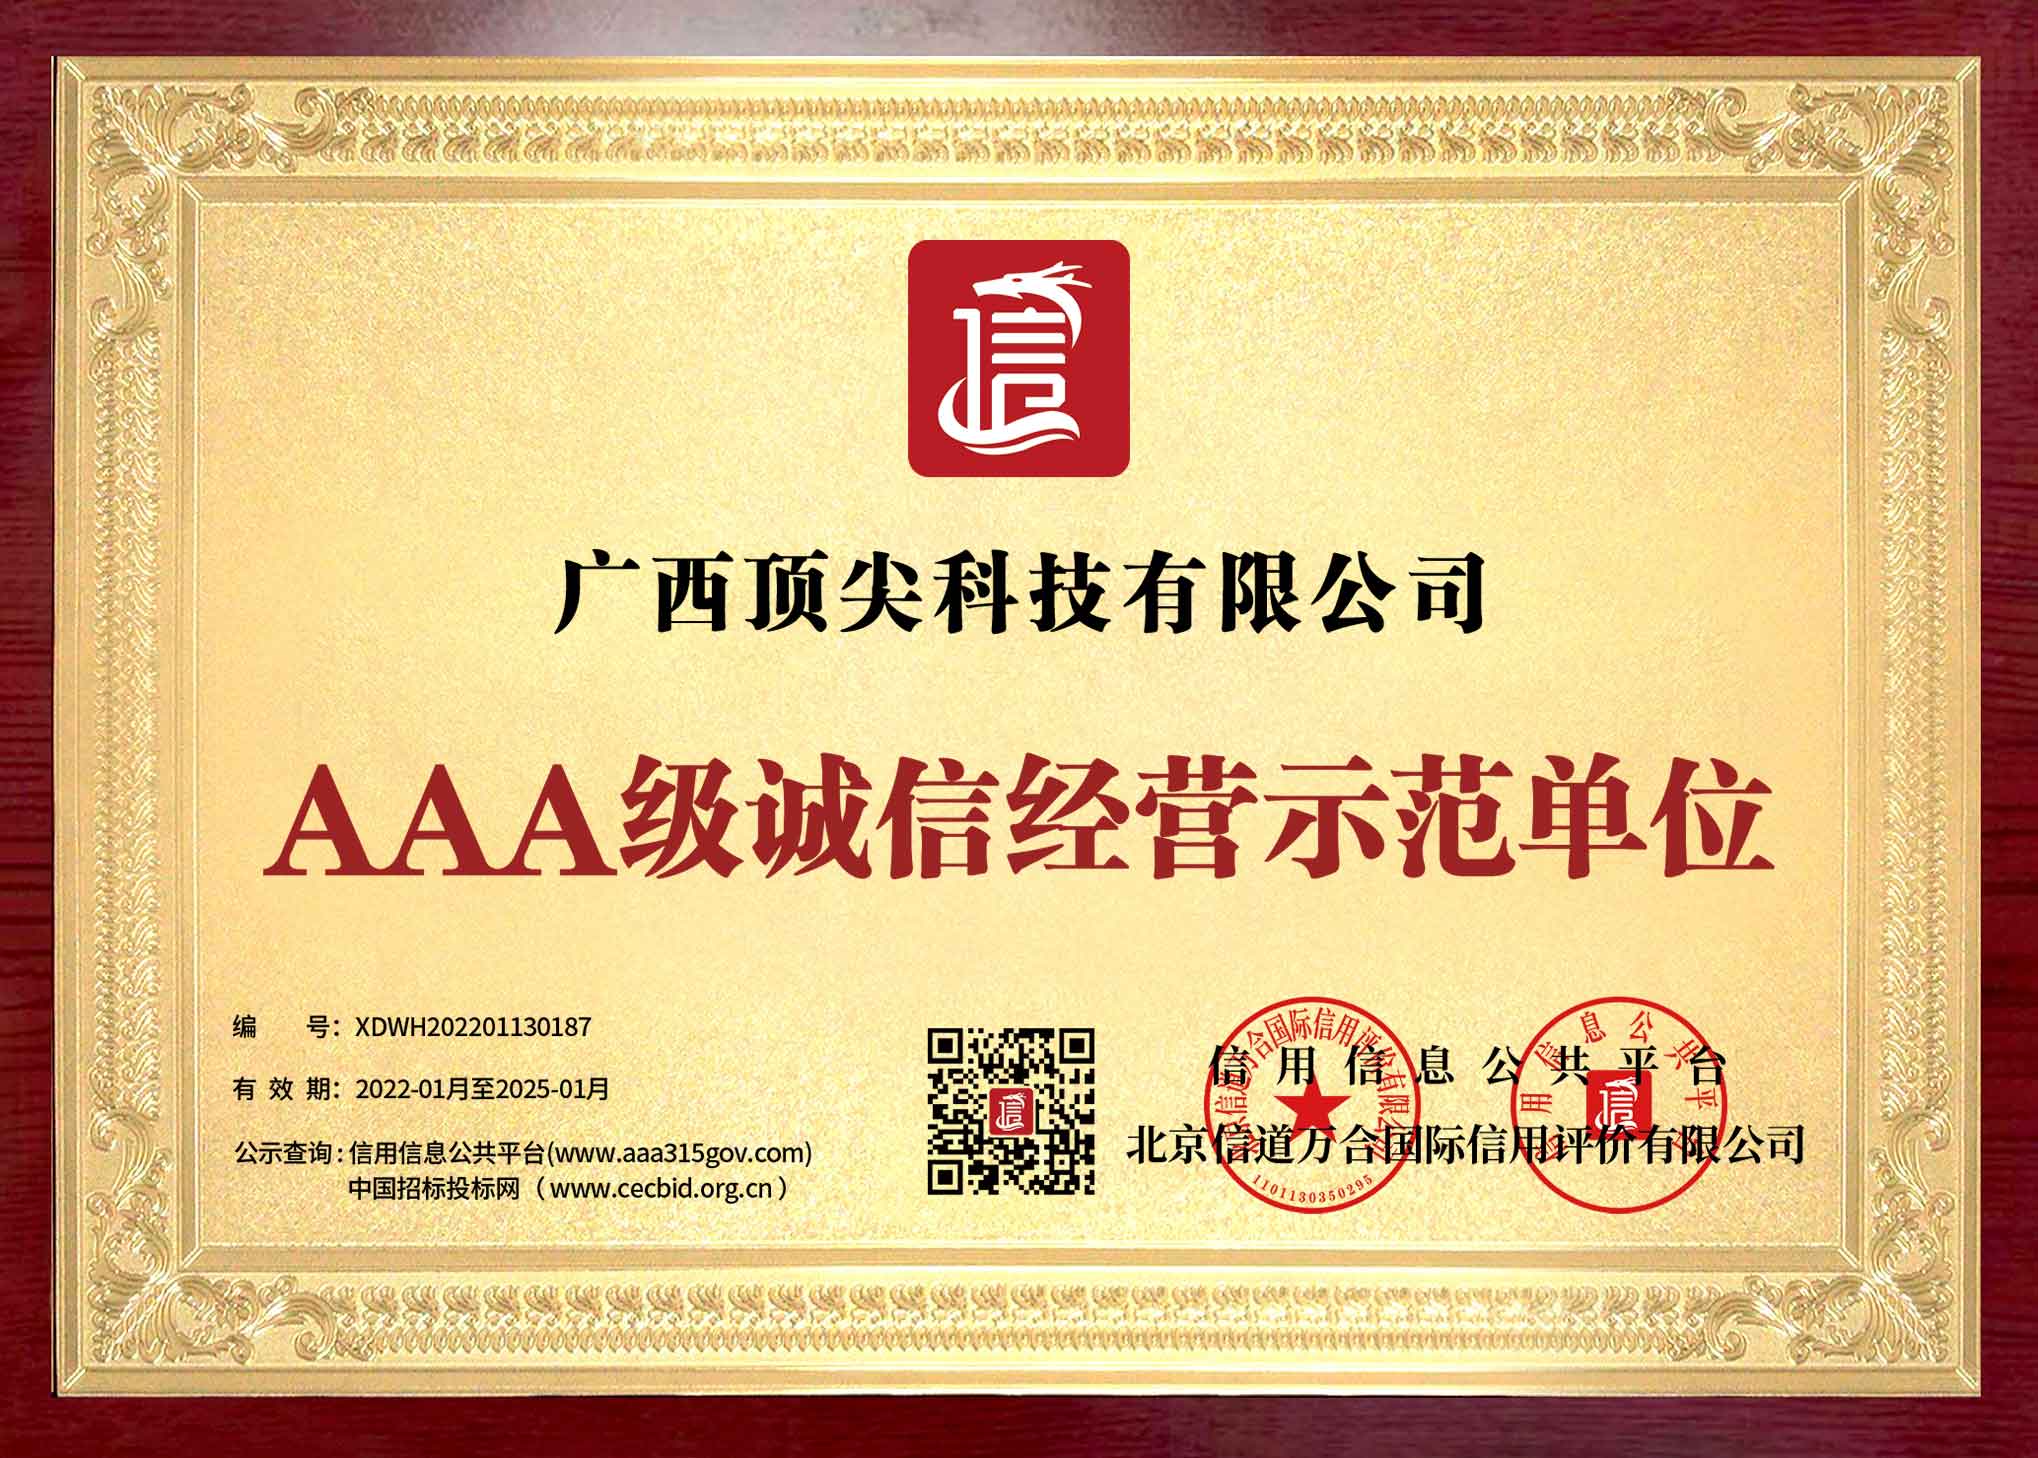 桂林地区AAA级诚信经营示范单位